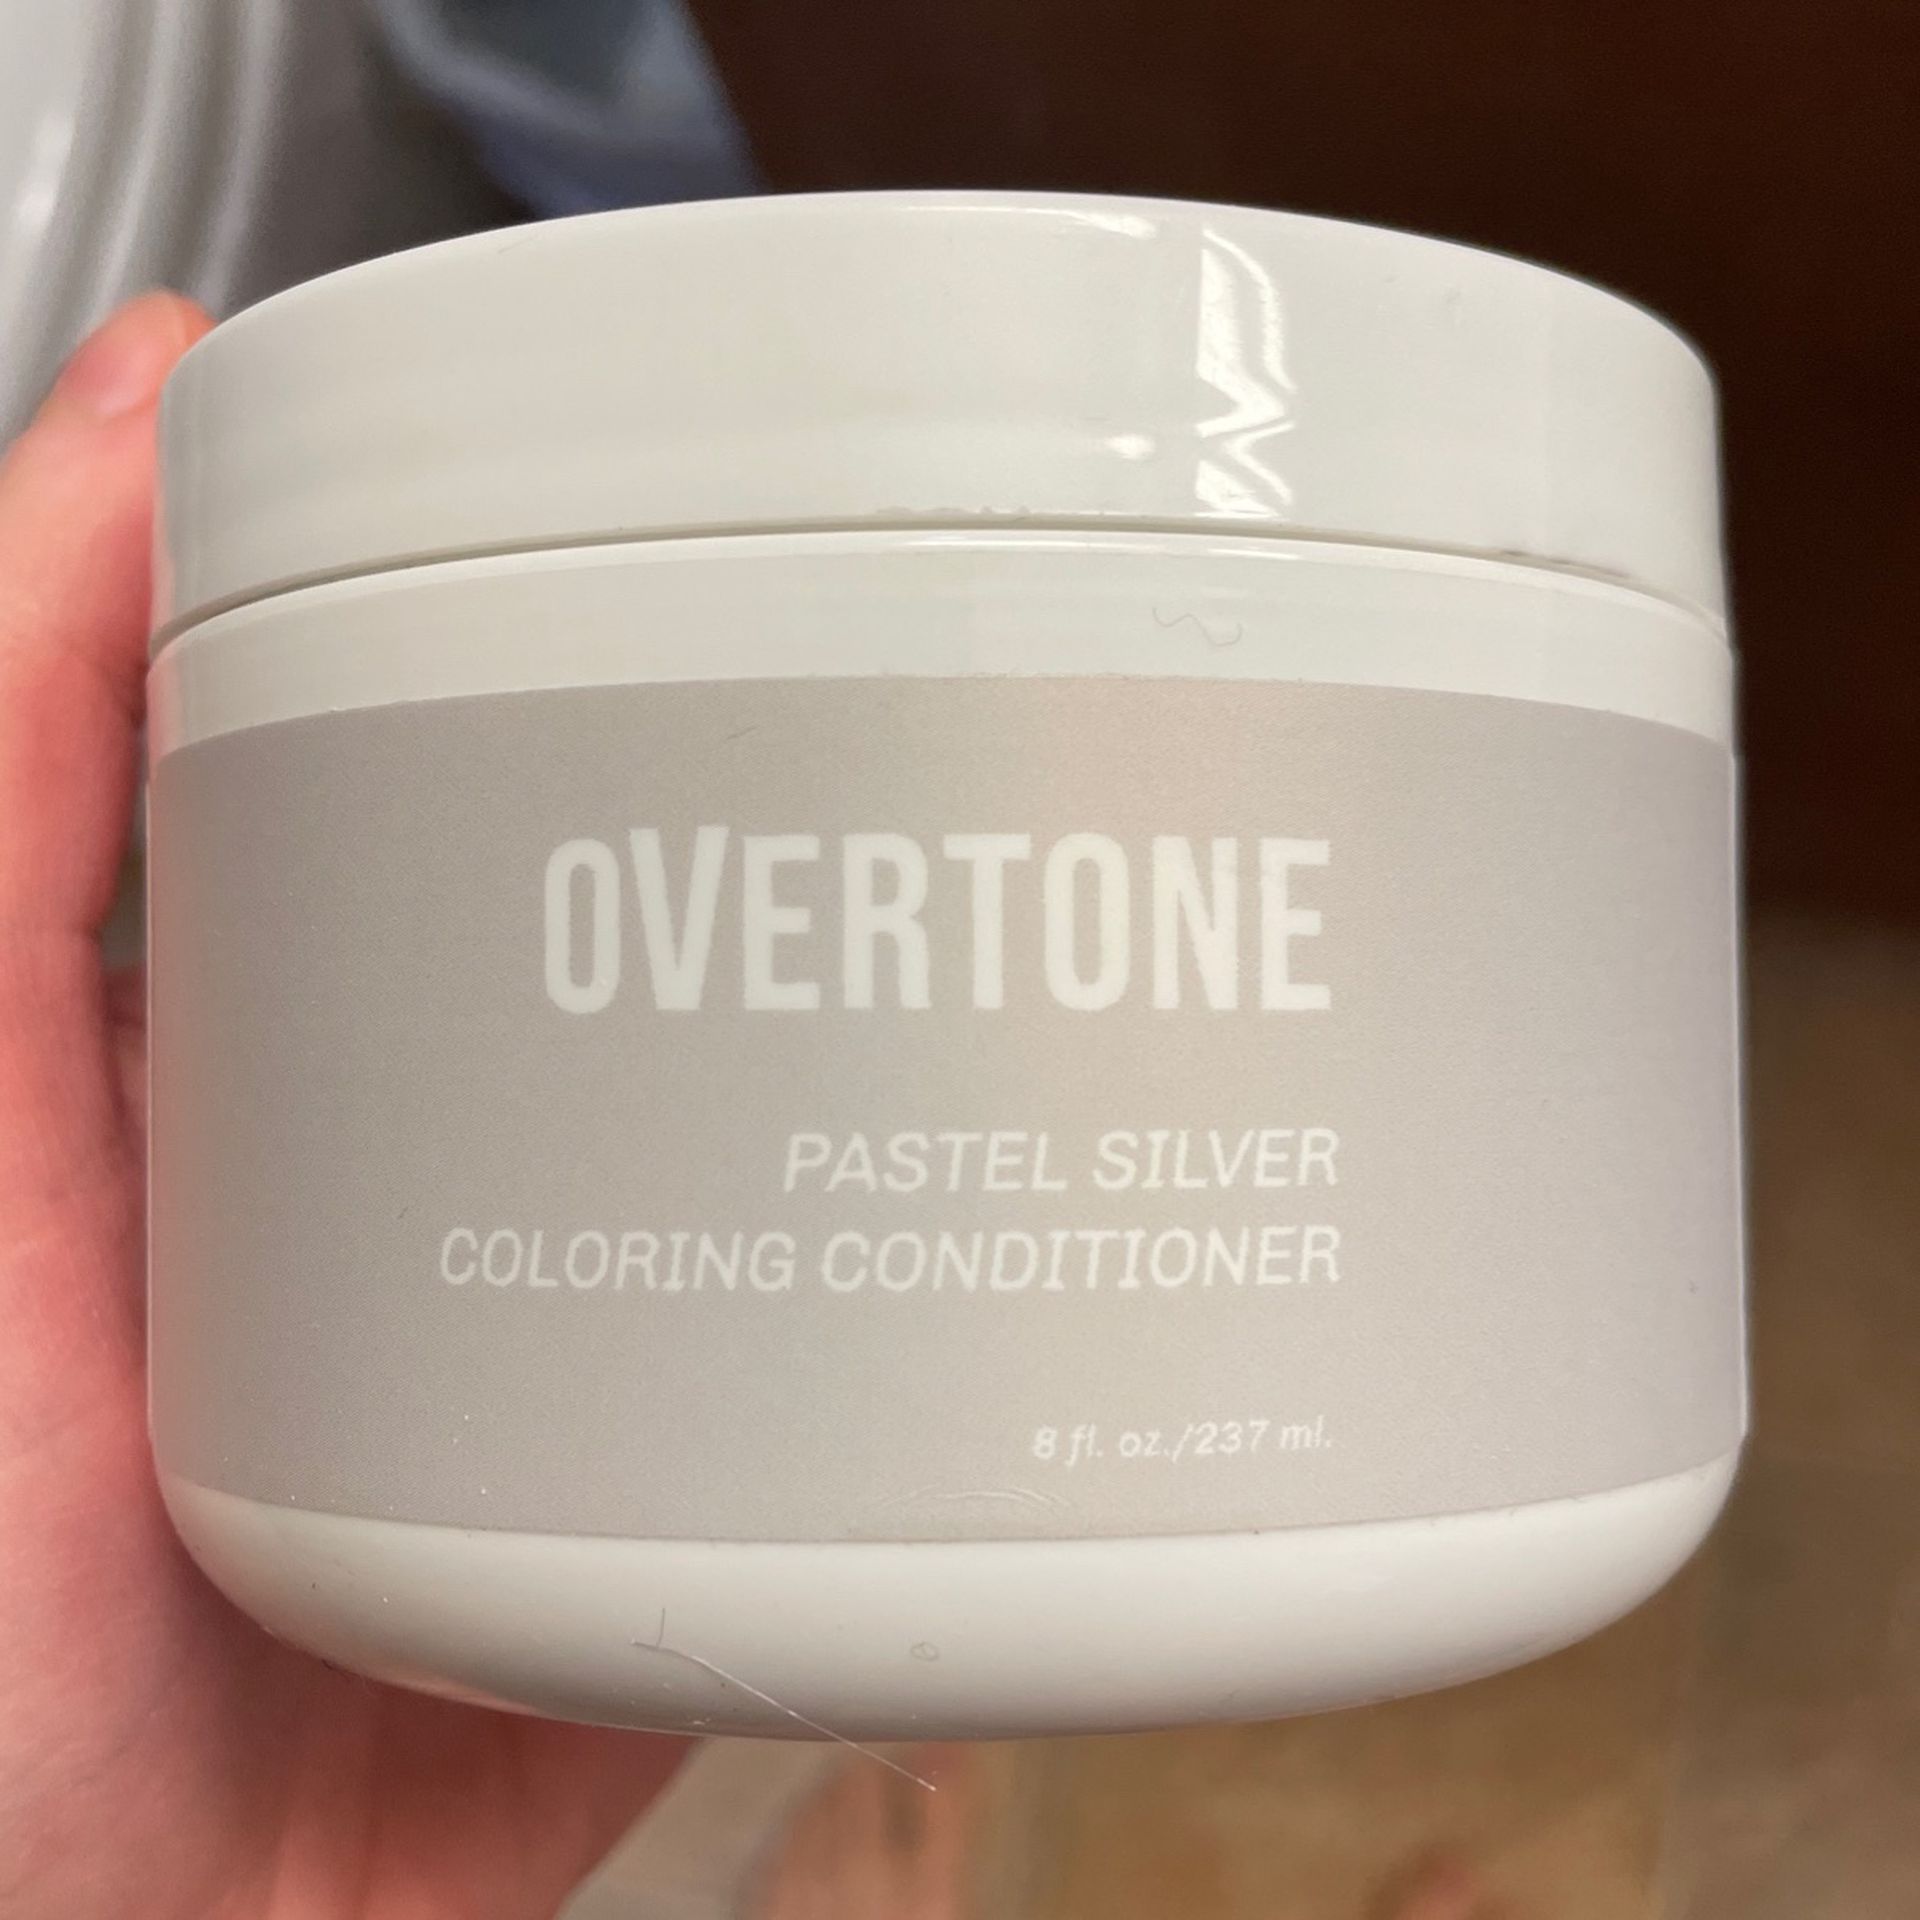 Overtone Hair Dye